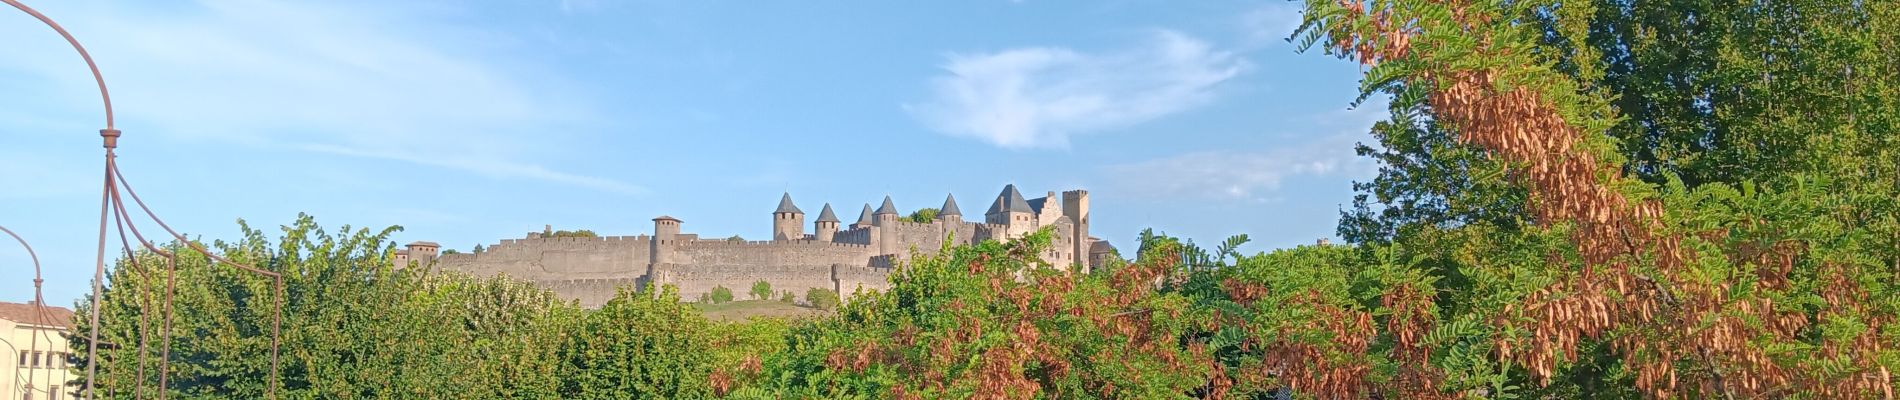 Randonnée Marche Carcassonne - carcassonne under the sun  - Photo